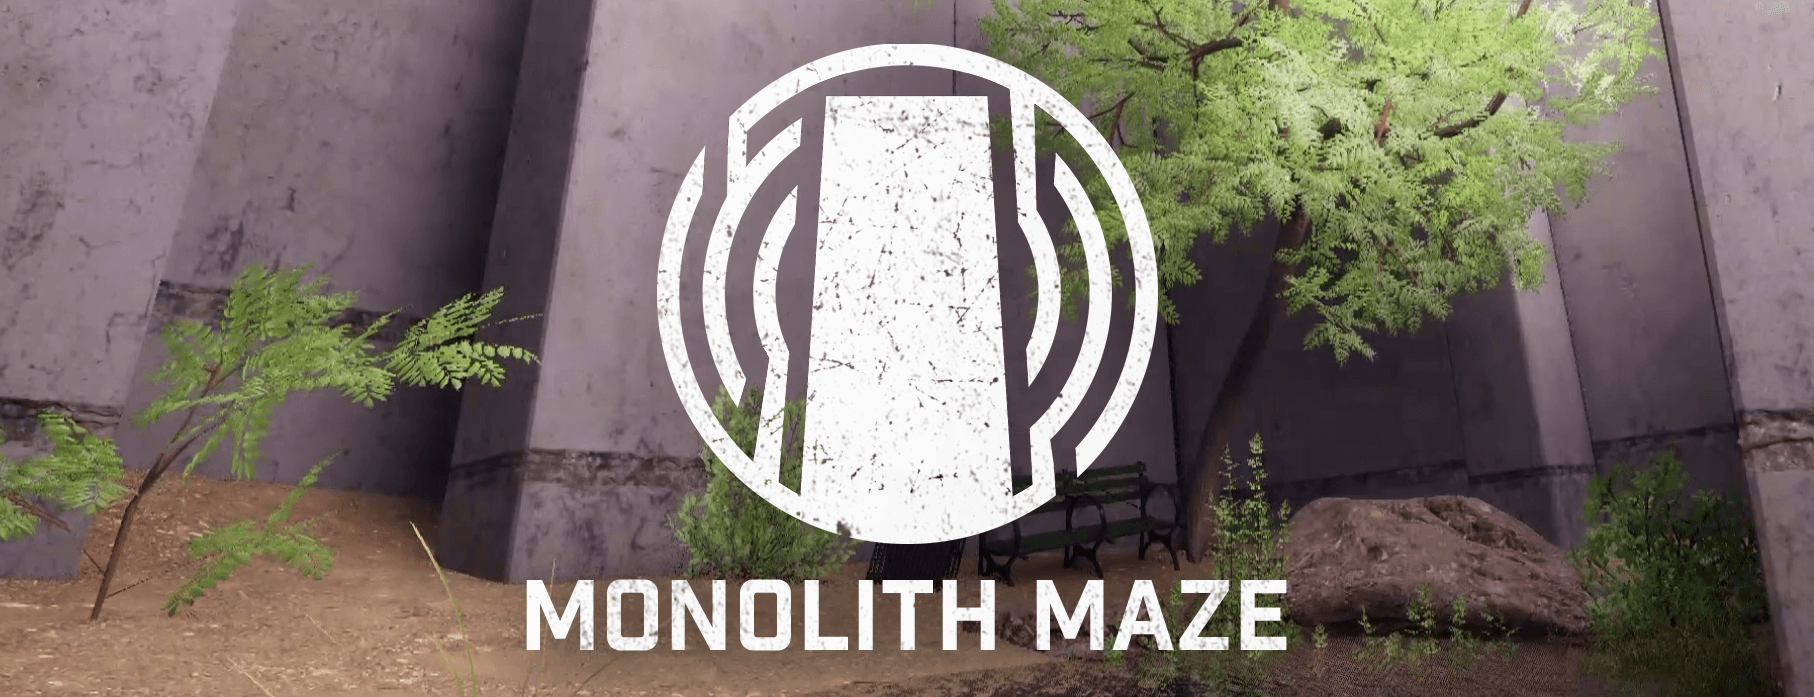 Monolith Maze